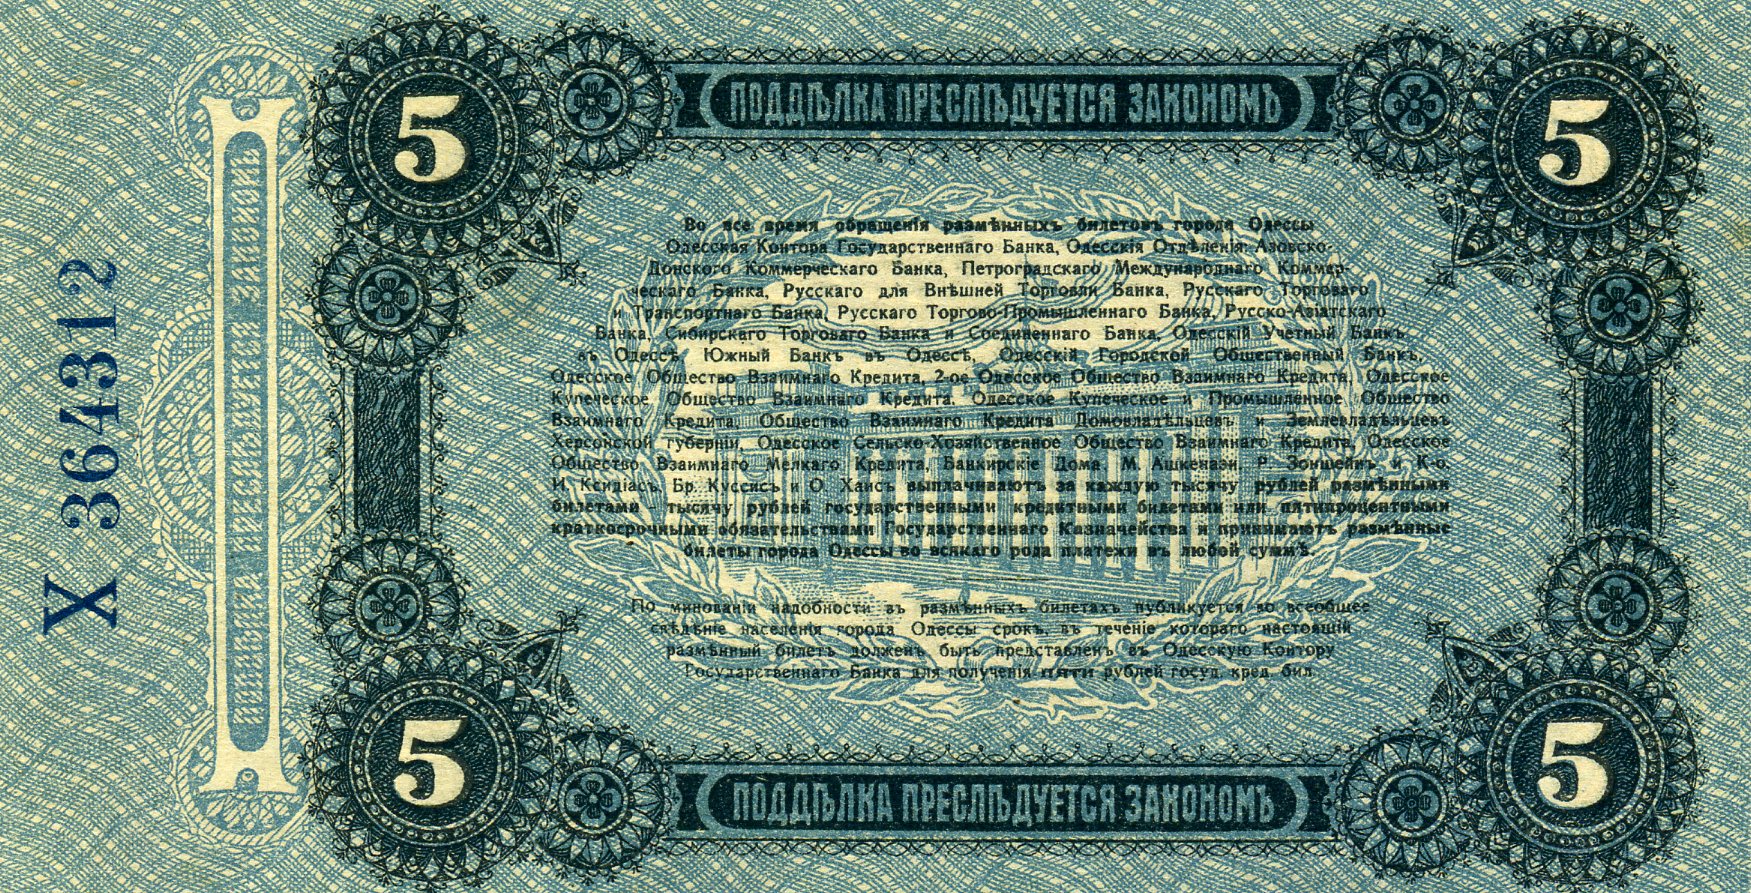 Разменный билет города Одессы 5 рублей 1917 года. Реверс. Реферат Рефератович.